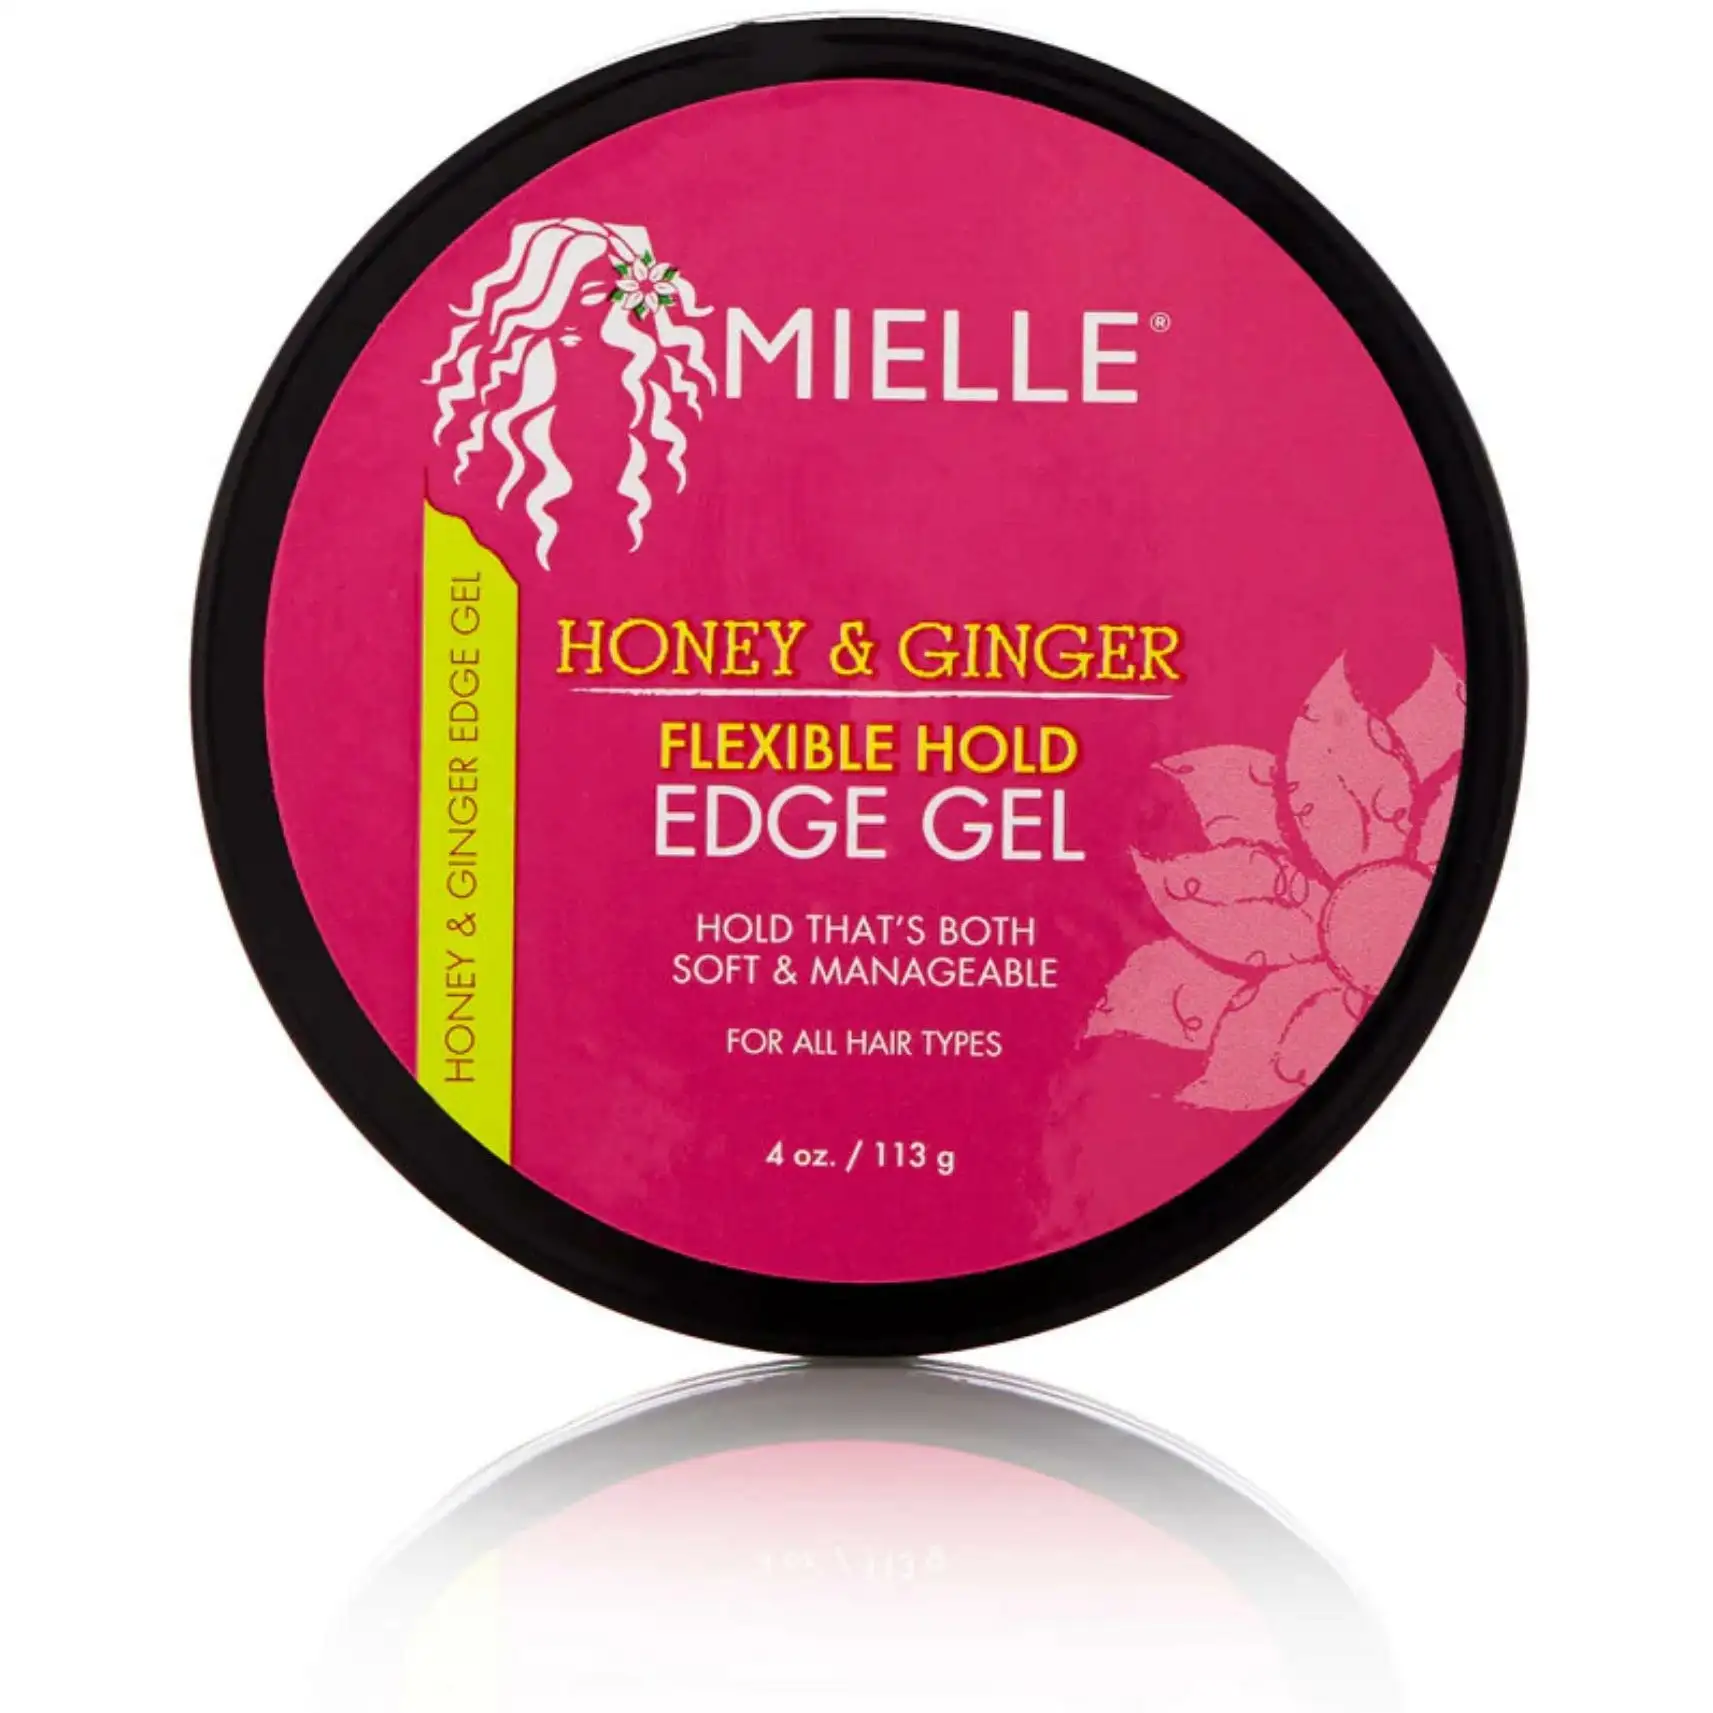 Mielle organics honey ginger flexible hold edge gel 4 oz_1413. DIAYTAR SENEGAL - Où la Qualité et la Diversité Fusionnent. Explorez notre boutique en ligne pour découvrir une gamme variée de produits qui incarnent l'excellence et l'authenticité.